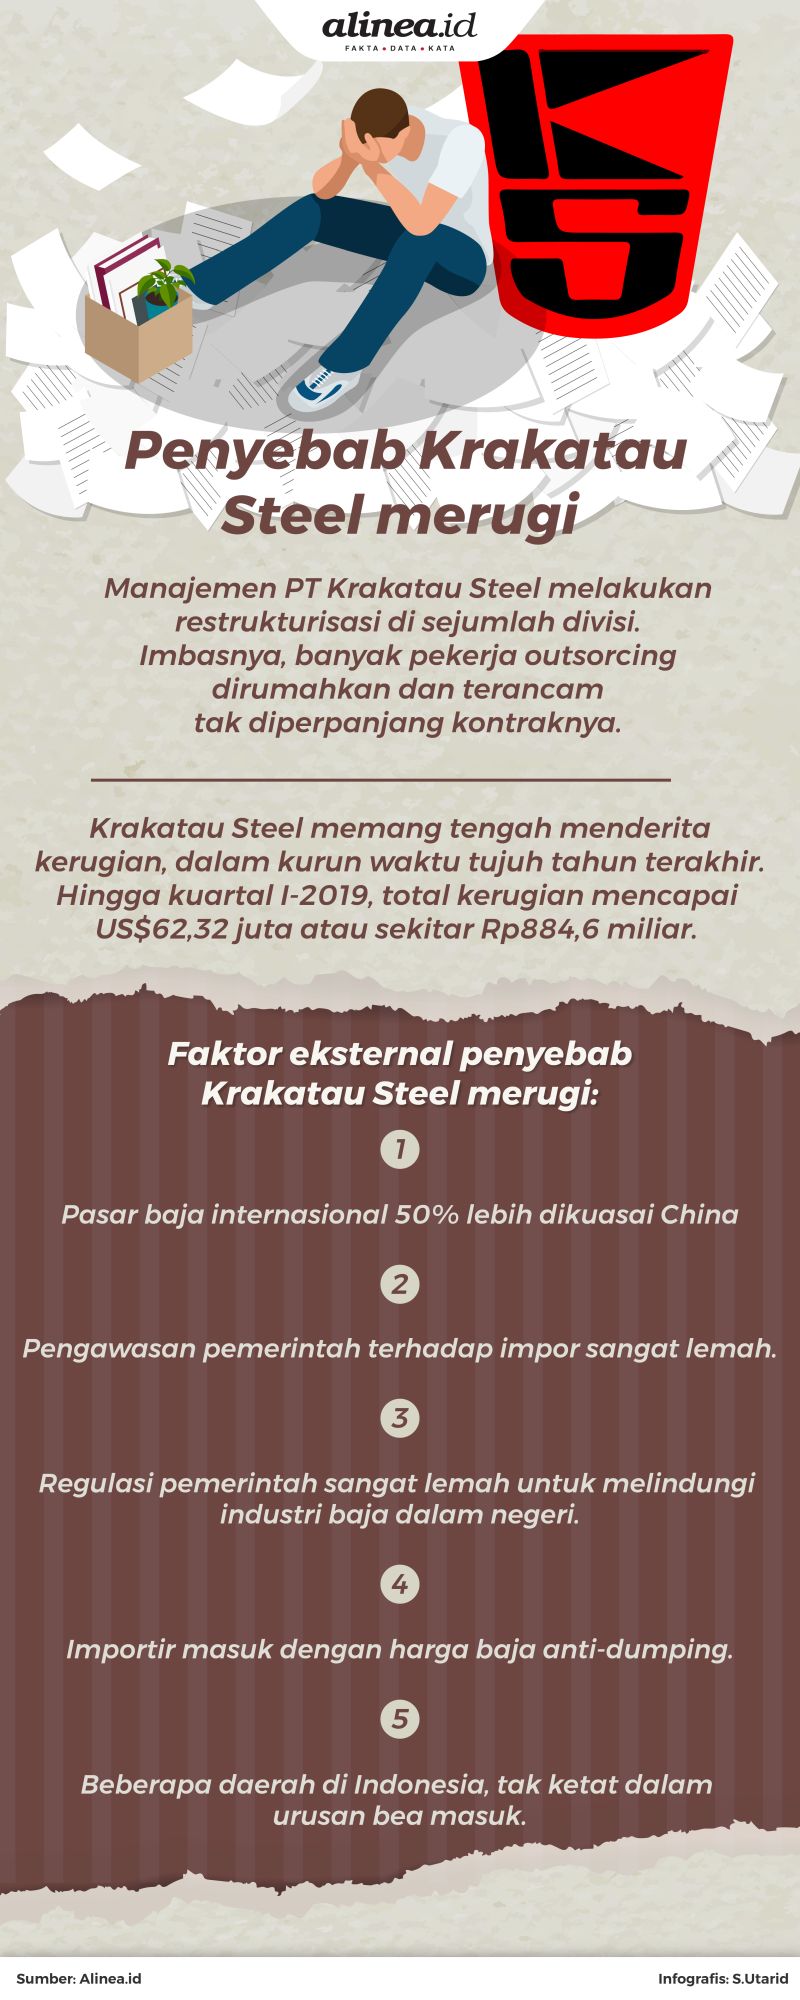 Krakatau Steel mengaku merugi tujuh tahun berturut-turut.